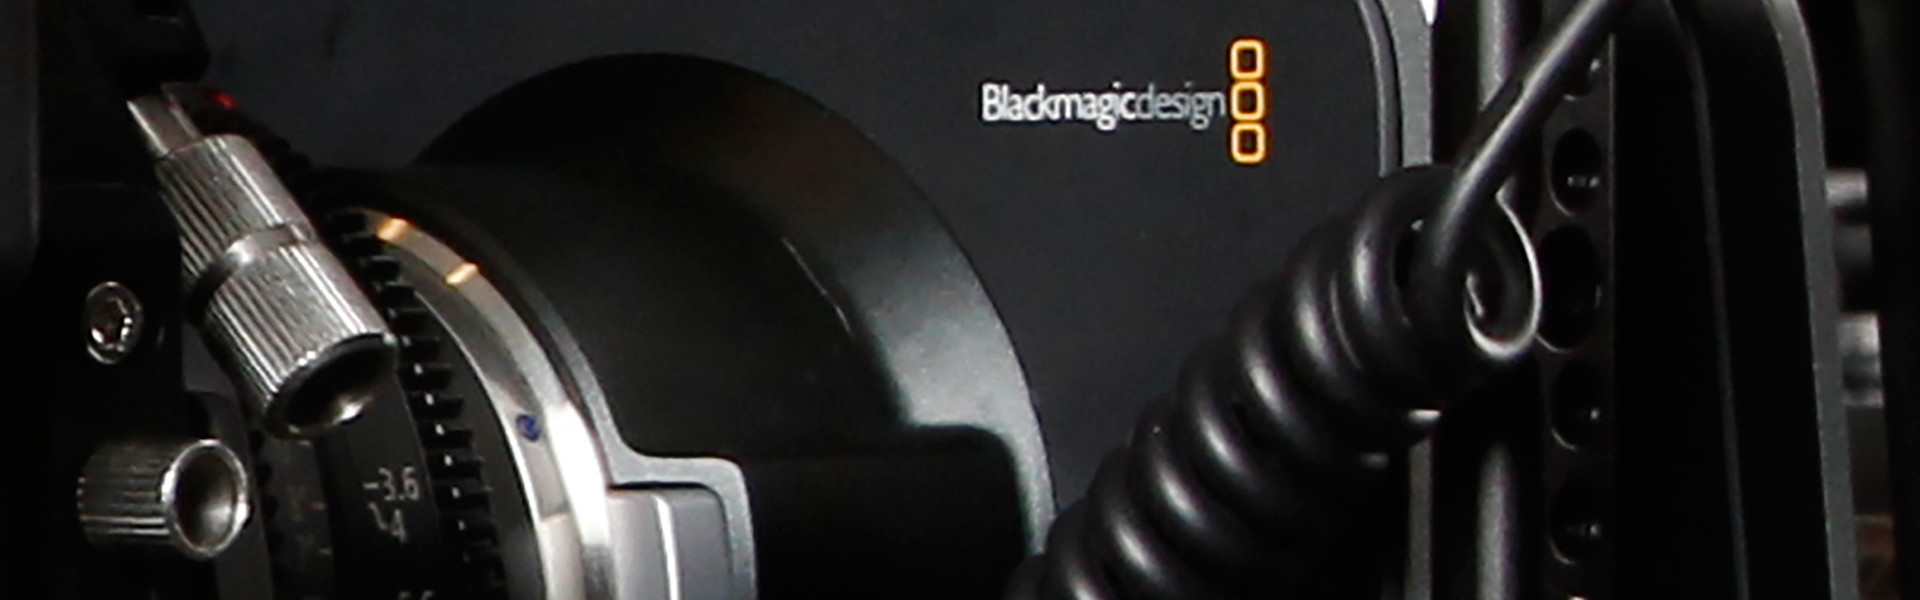 Header image for article Blackmagic Design Releases DaVinci Resolve 10